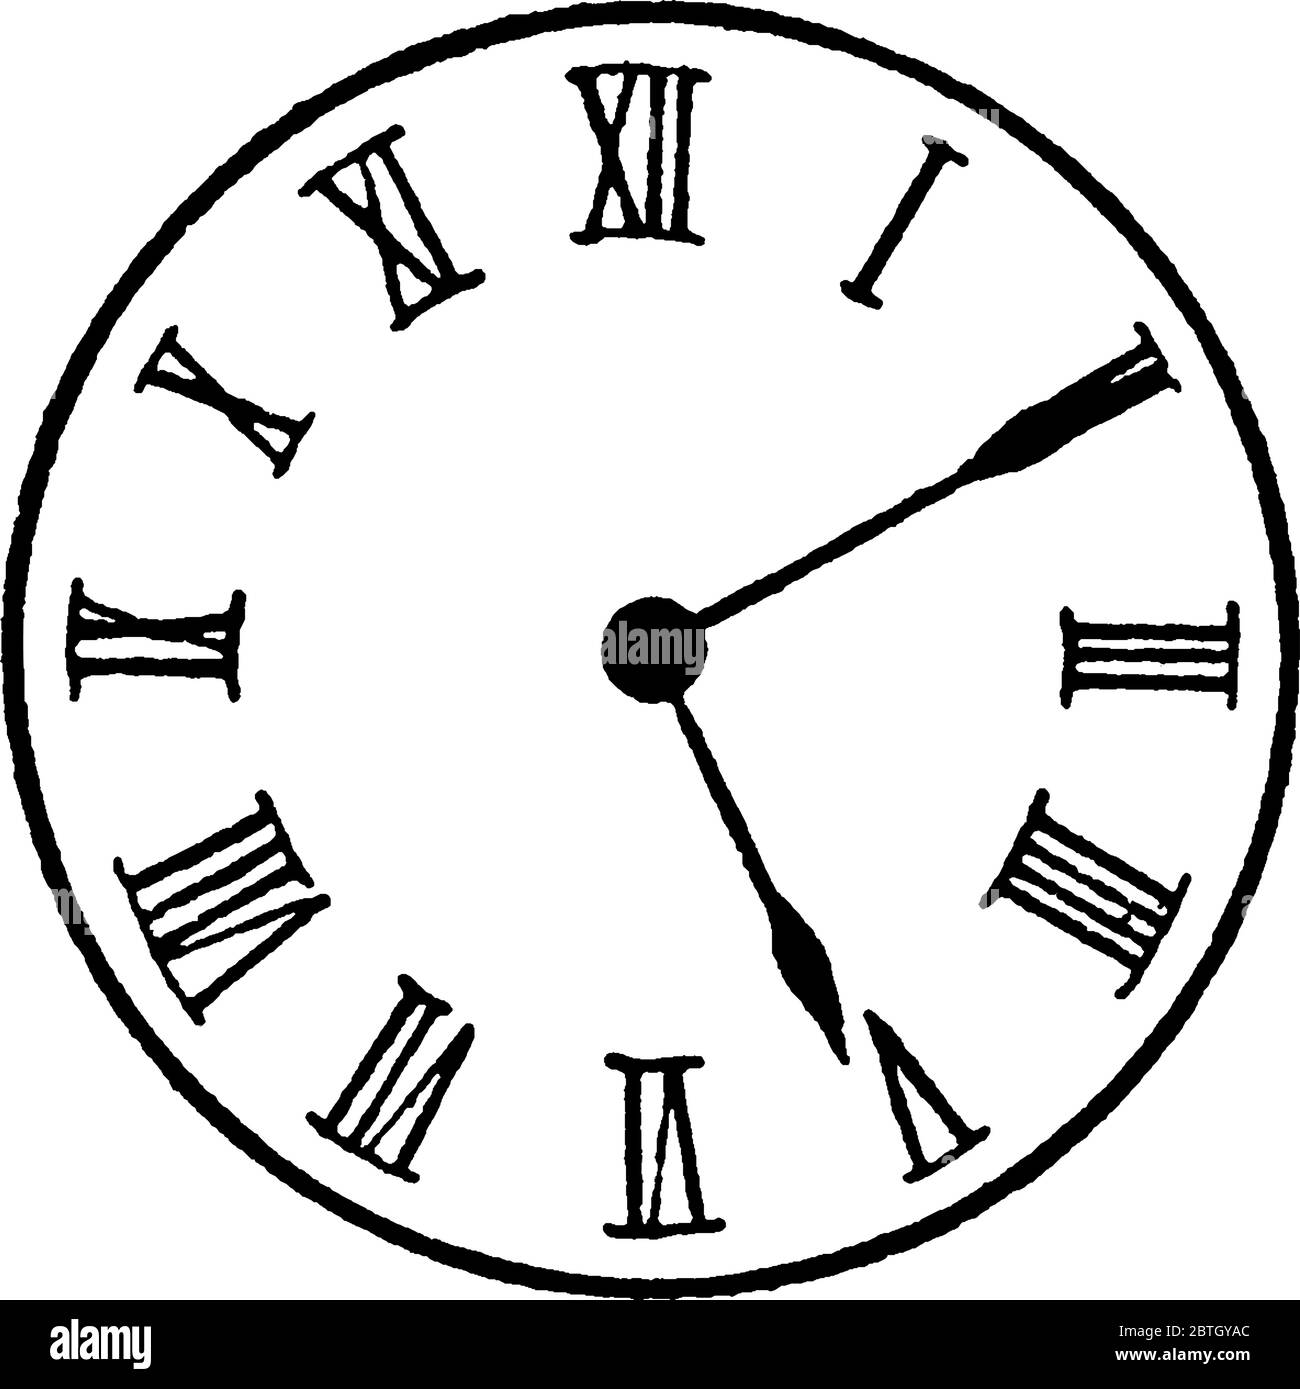 1 24 5 52. Римские часы для детей. Аналоговый циферблат часов без стрелок. Римские часы и обычные. Циферблат старинных часов вектор.